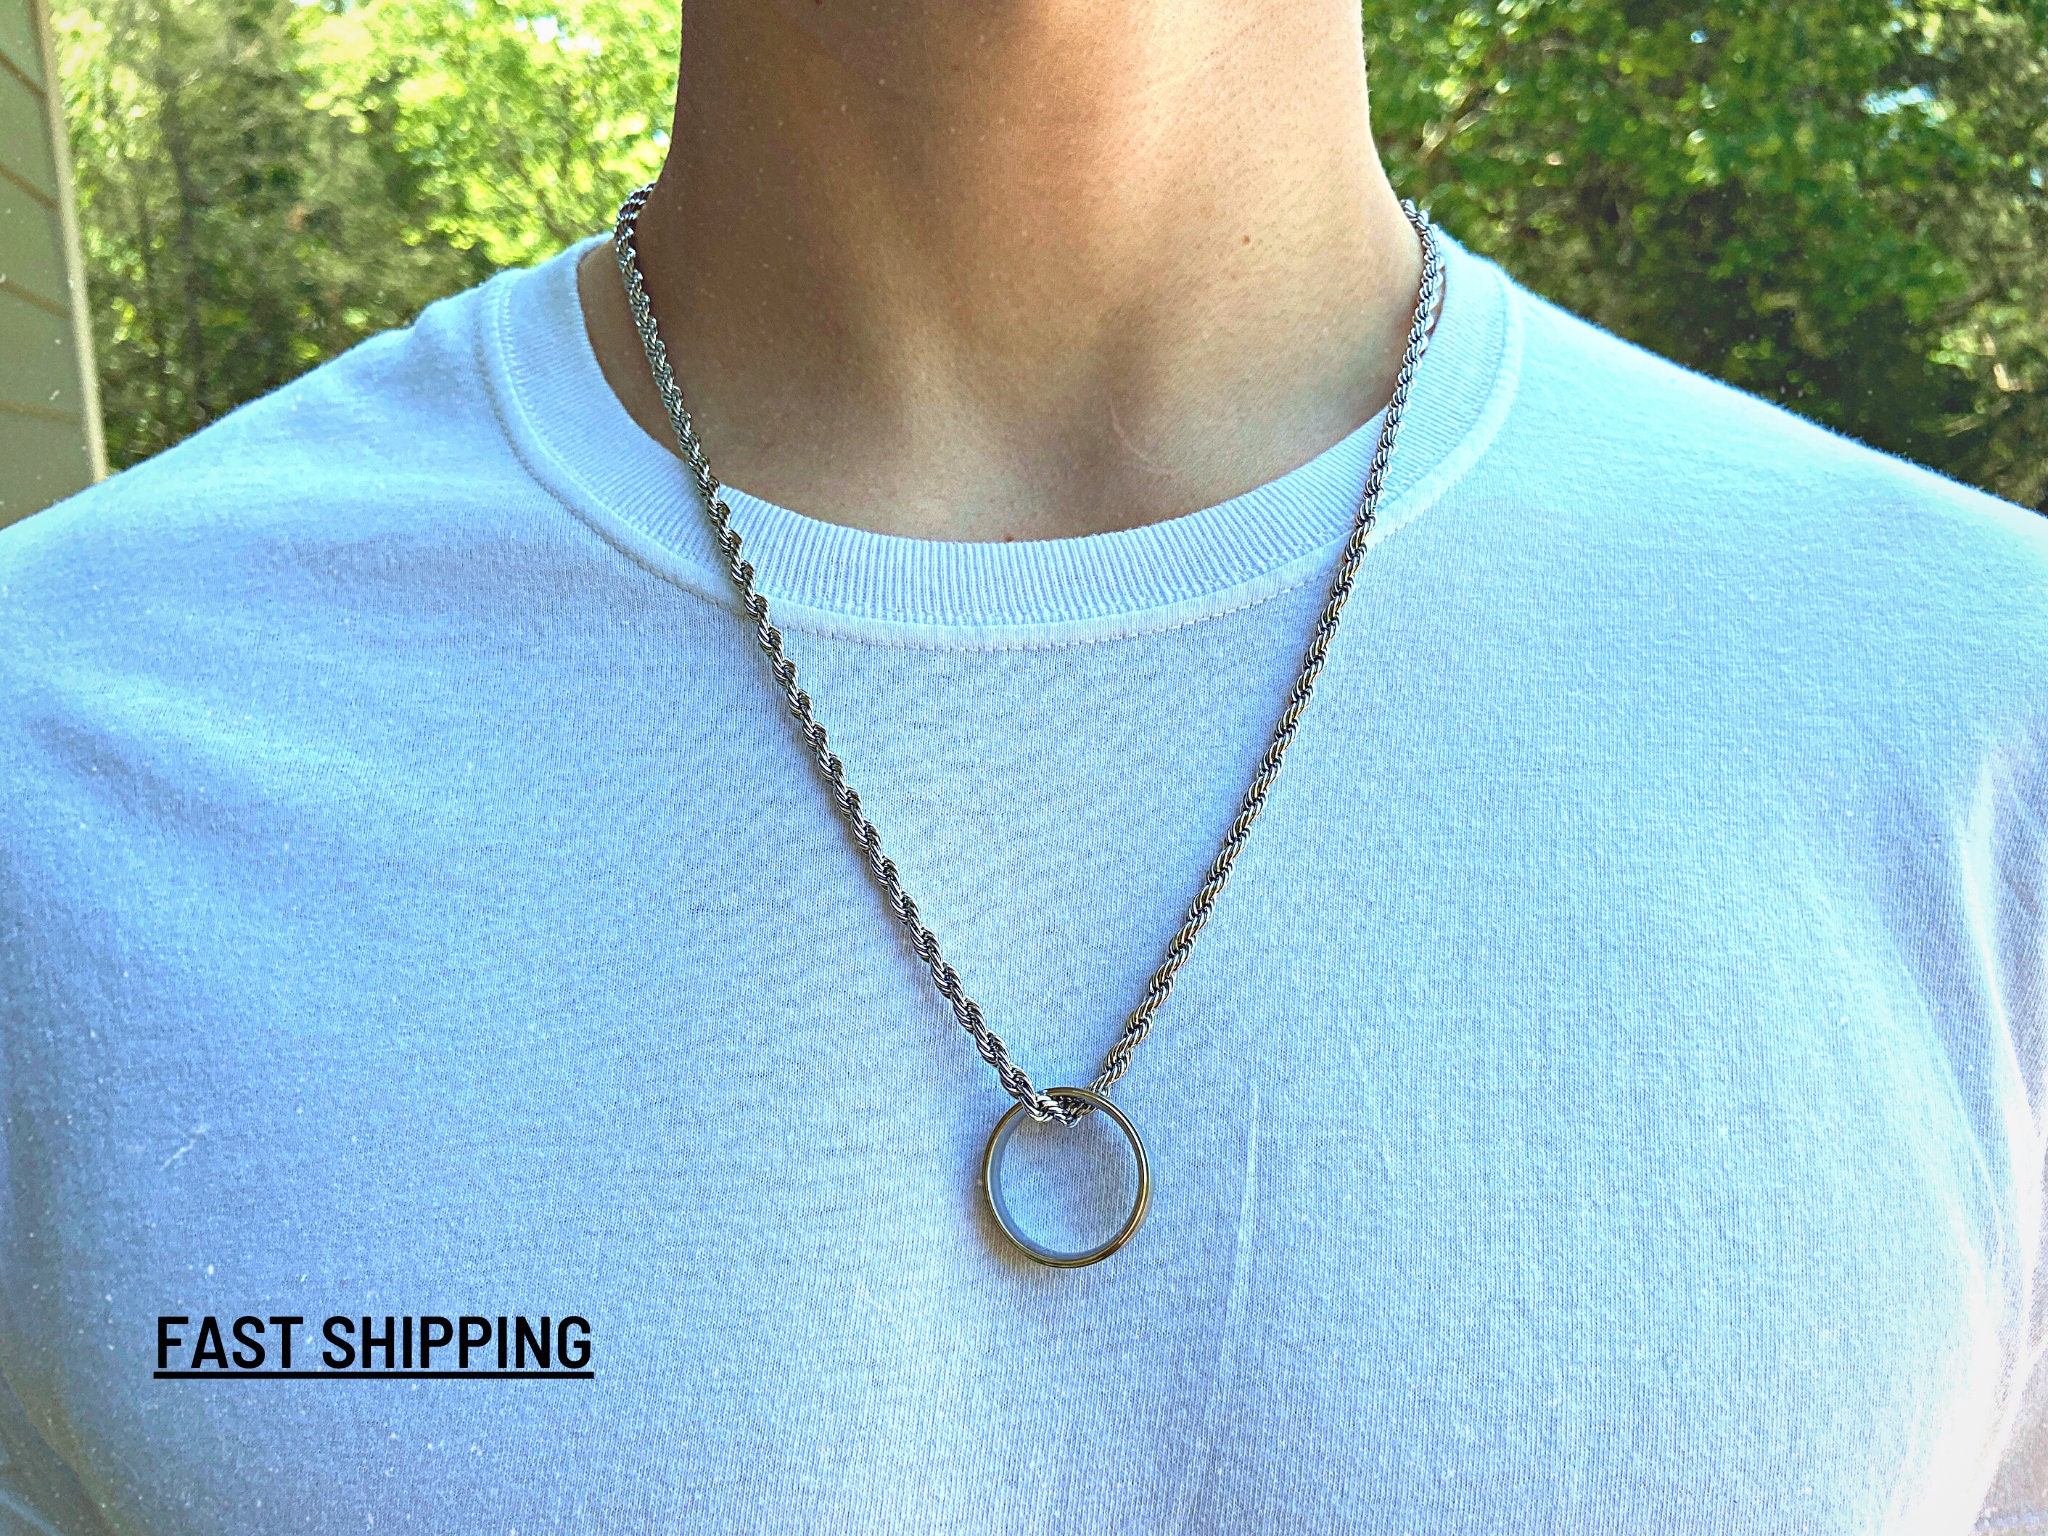 Ring Pendant Necklace | Ring pendant necklace, Pendant necklace, Necklace